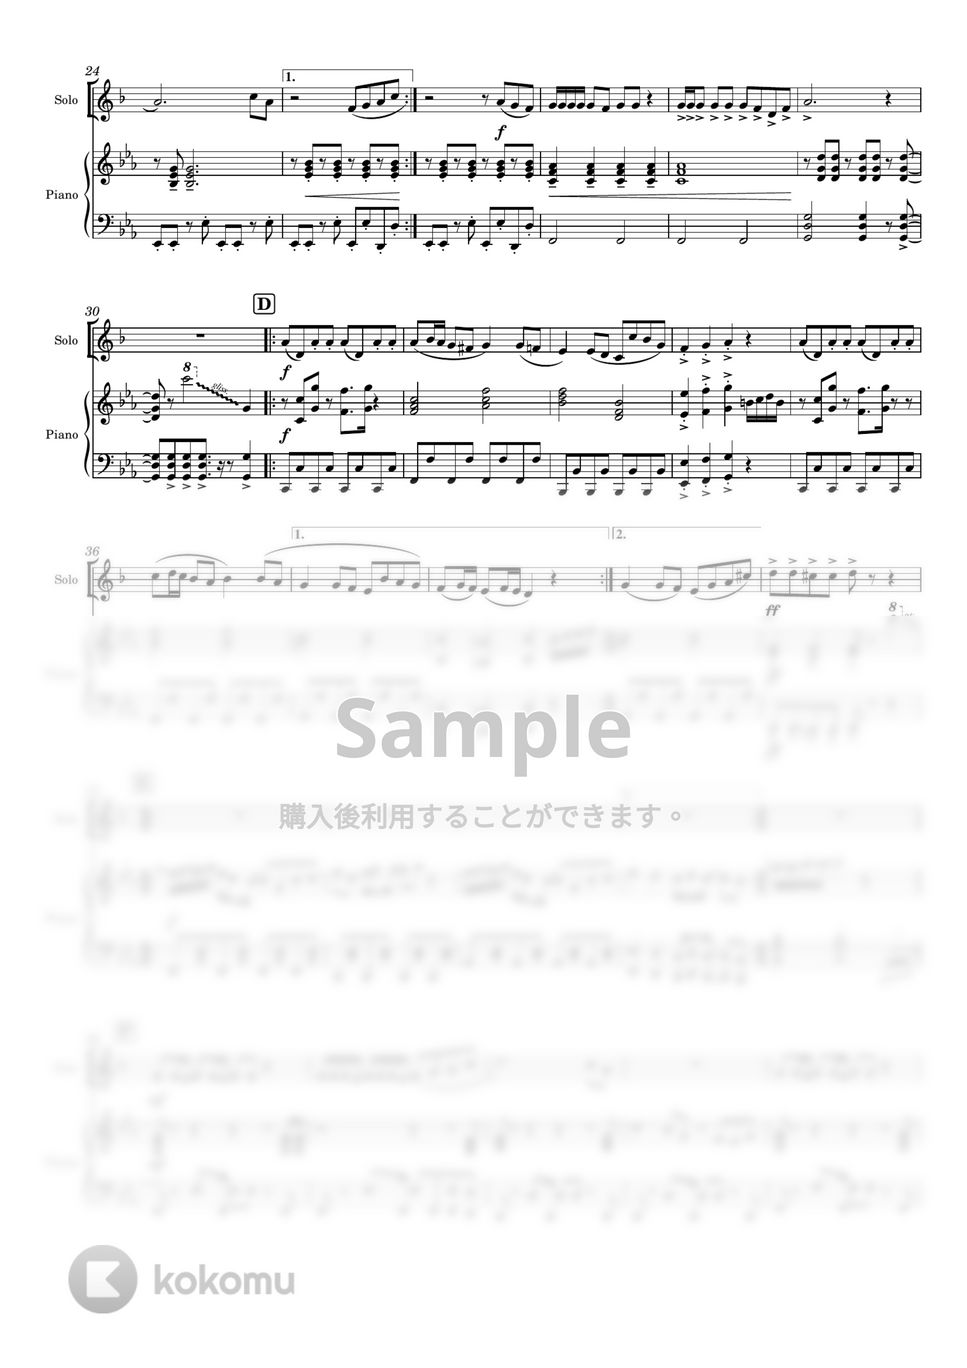 おジャ魔女どれみ - おジャ魔女カーニバル!! (管楽器ソロ/in B♭/ピアノ伴奏つき/) by Tawa